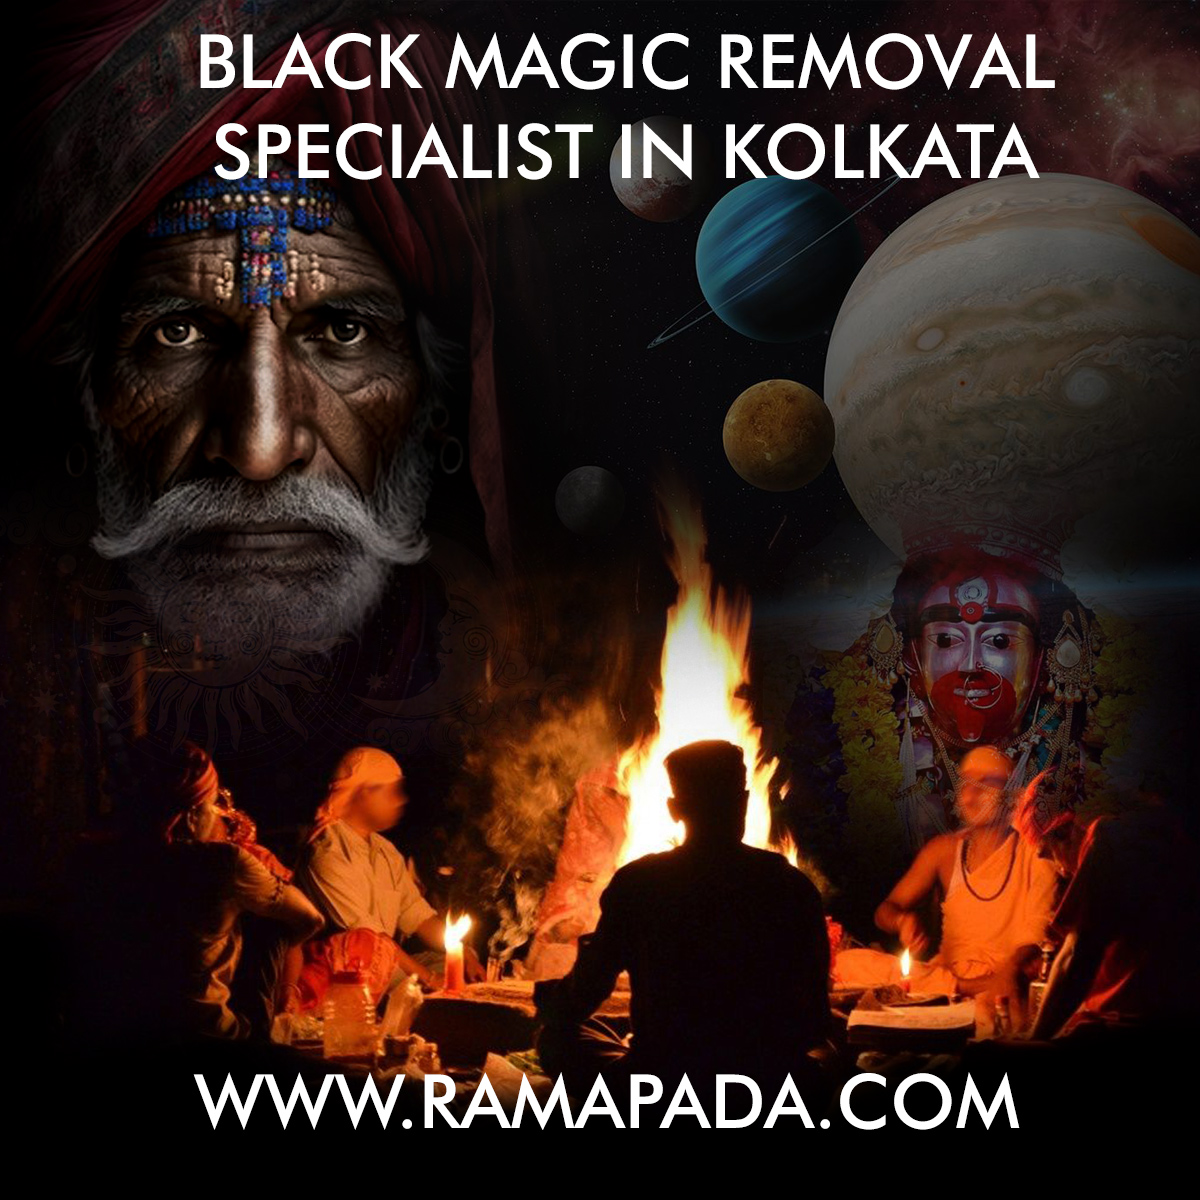 Black Magic Removal Specialist in Kolkata - Ramapada Acharjee